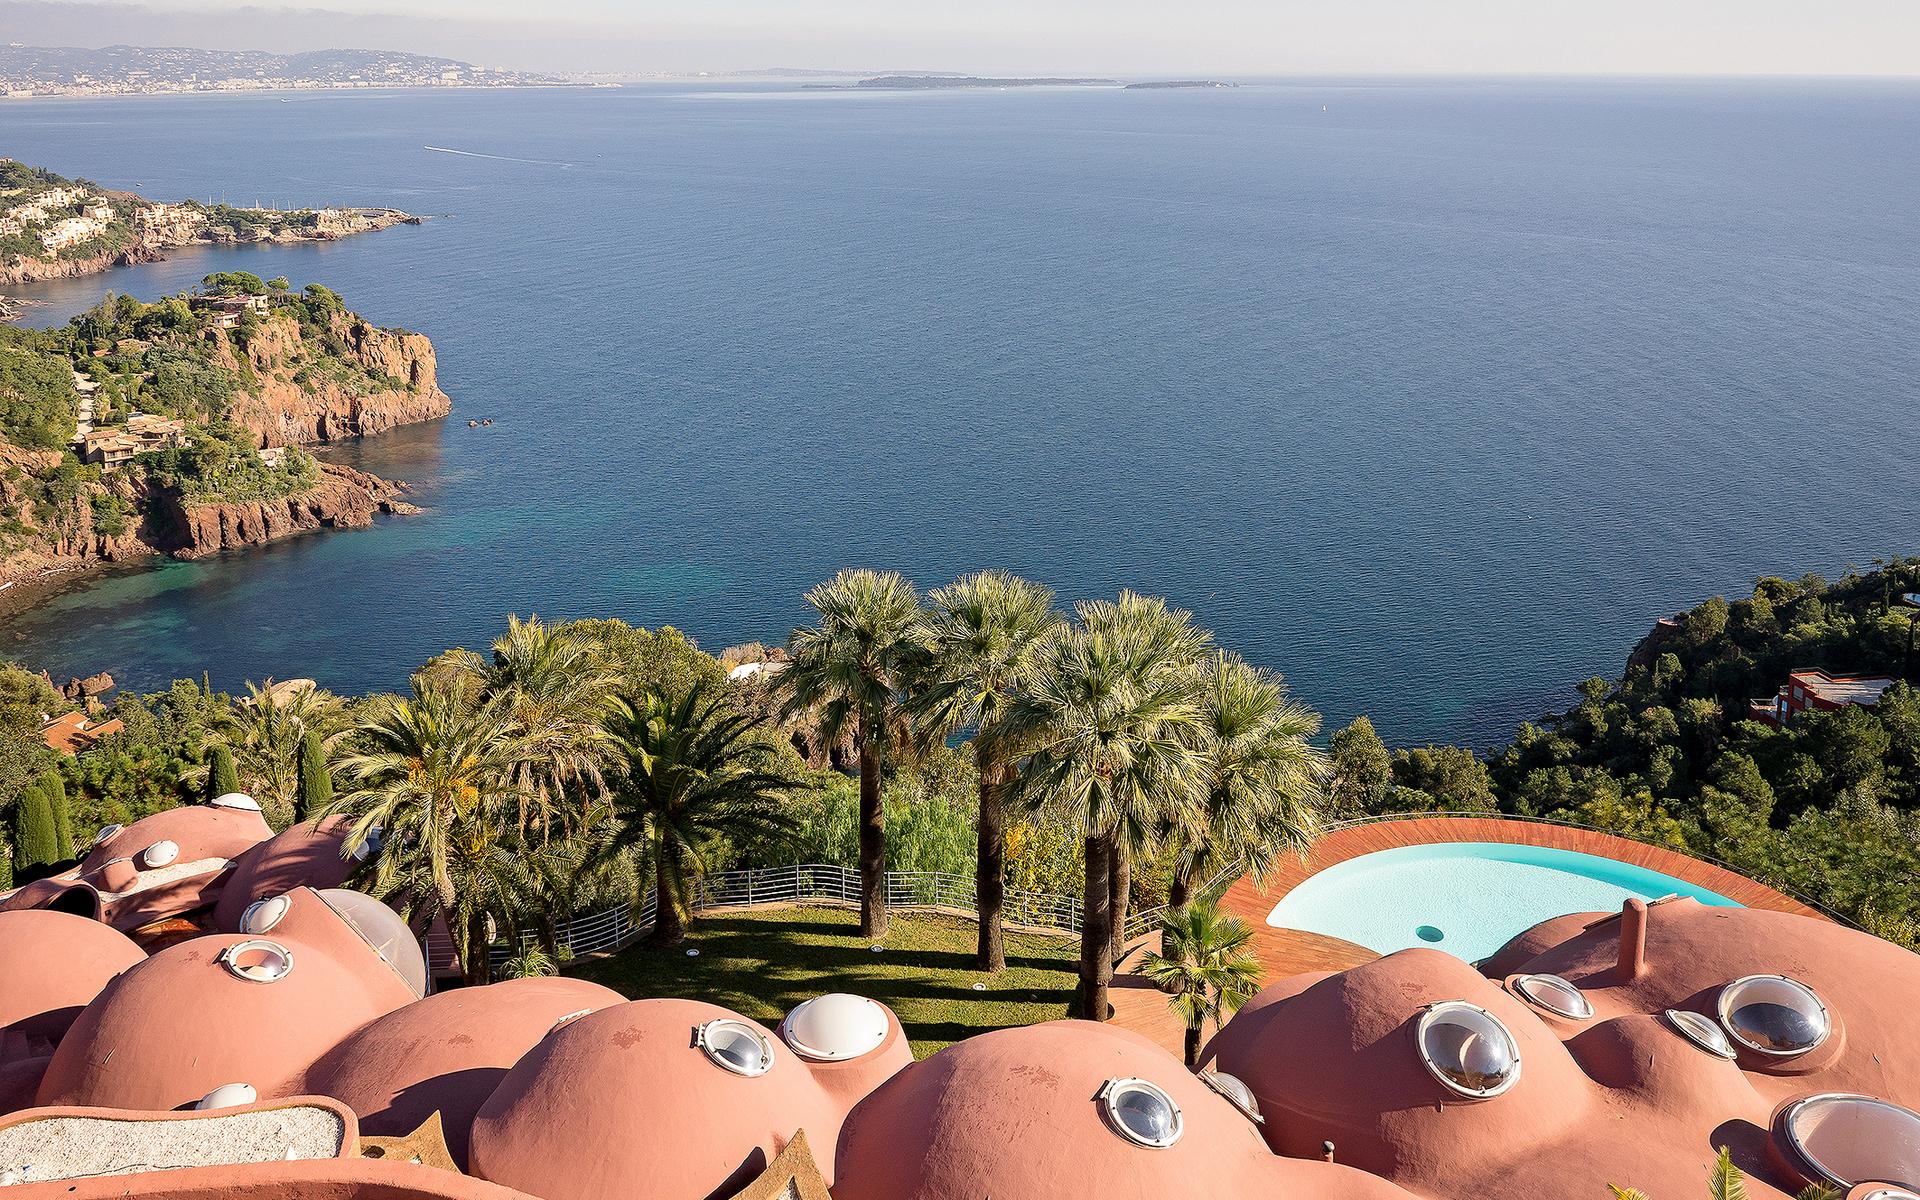 Bubbelpalatset ligger högt upp på en klippa strax utanför Cannes.